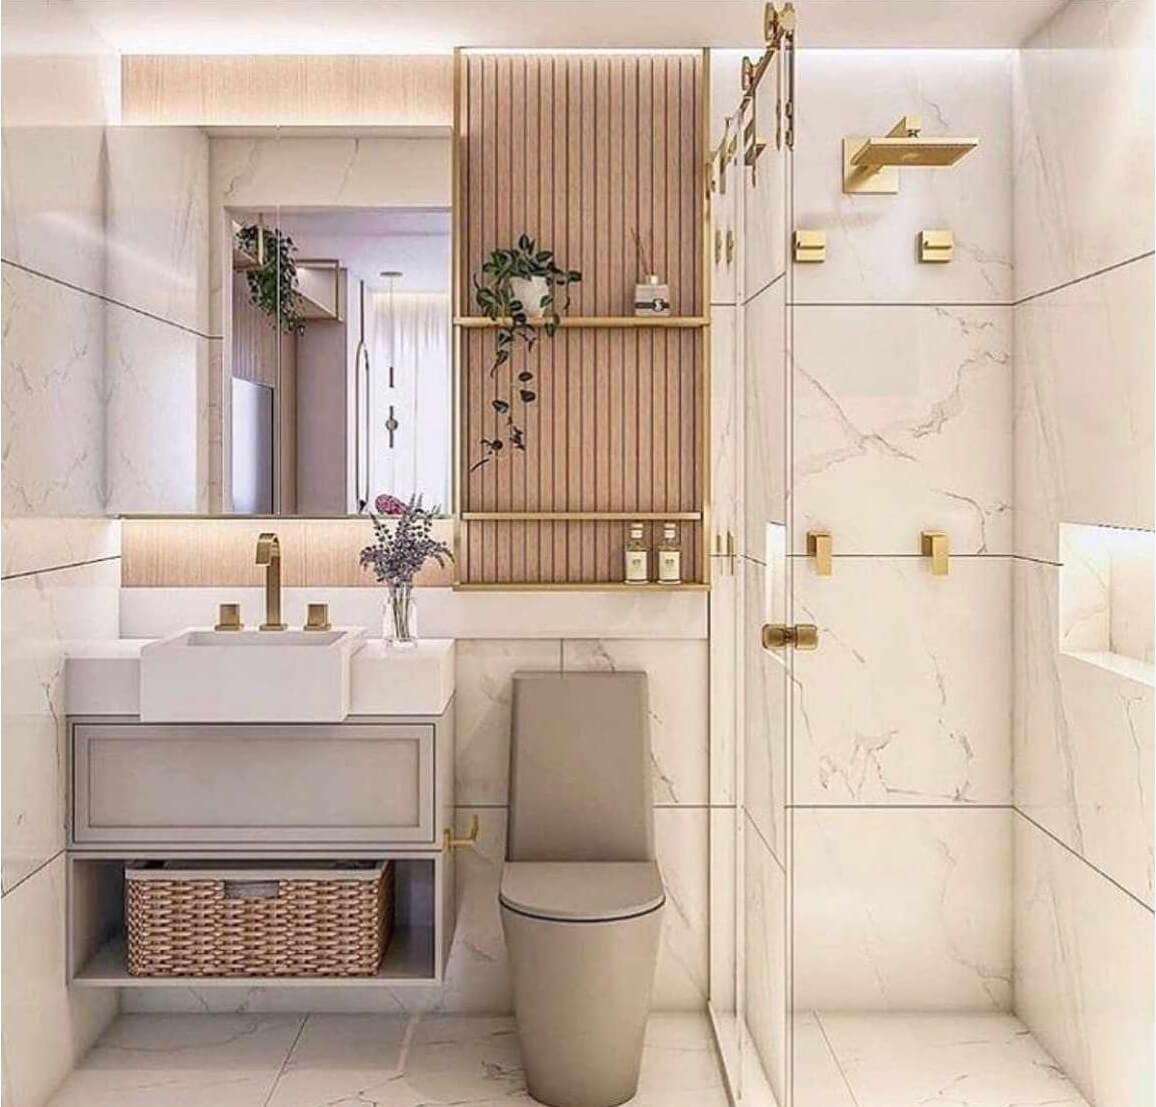 Nếu bạn yêu thích phong cách thiết kế sang trọng cho phòng tắm thì đừng bỏ qua bức ảnh này. Thiết kế phòng tắm đẹp với sự kết hợp phù hợp giữa màu sắc và đồ nội thất sẽ tạo nên không gian tuyệt đẹp như mong muốn. Phòng tắm rộng rãi và tiện nghi sẽ giúp bạn relax và giải tỏa stress sau một ngày làm việc mệt nhọc. Hãy tận hưởng không gian tắm rửa thư giãn và đẹp như trong mơ.